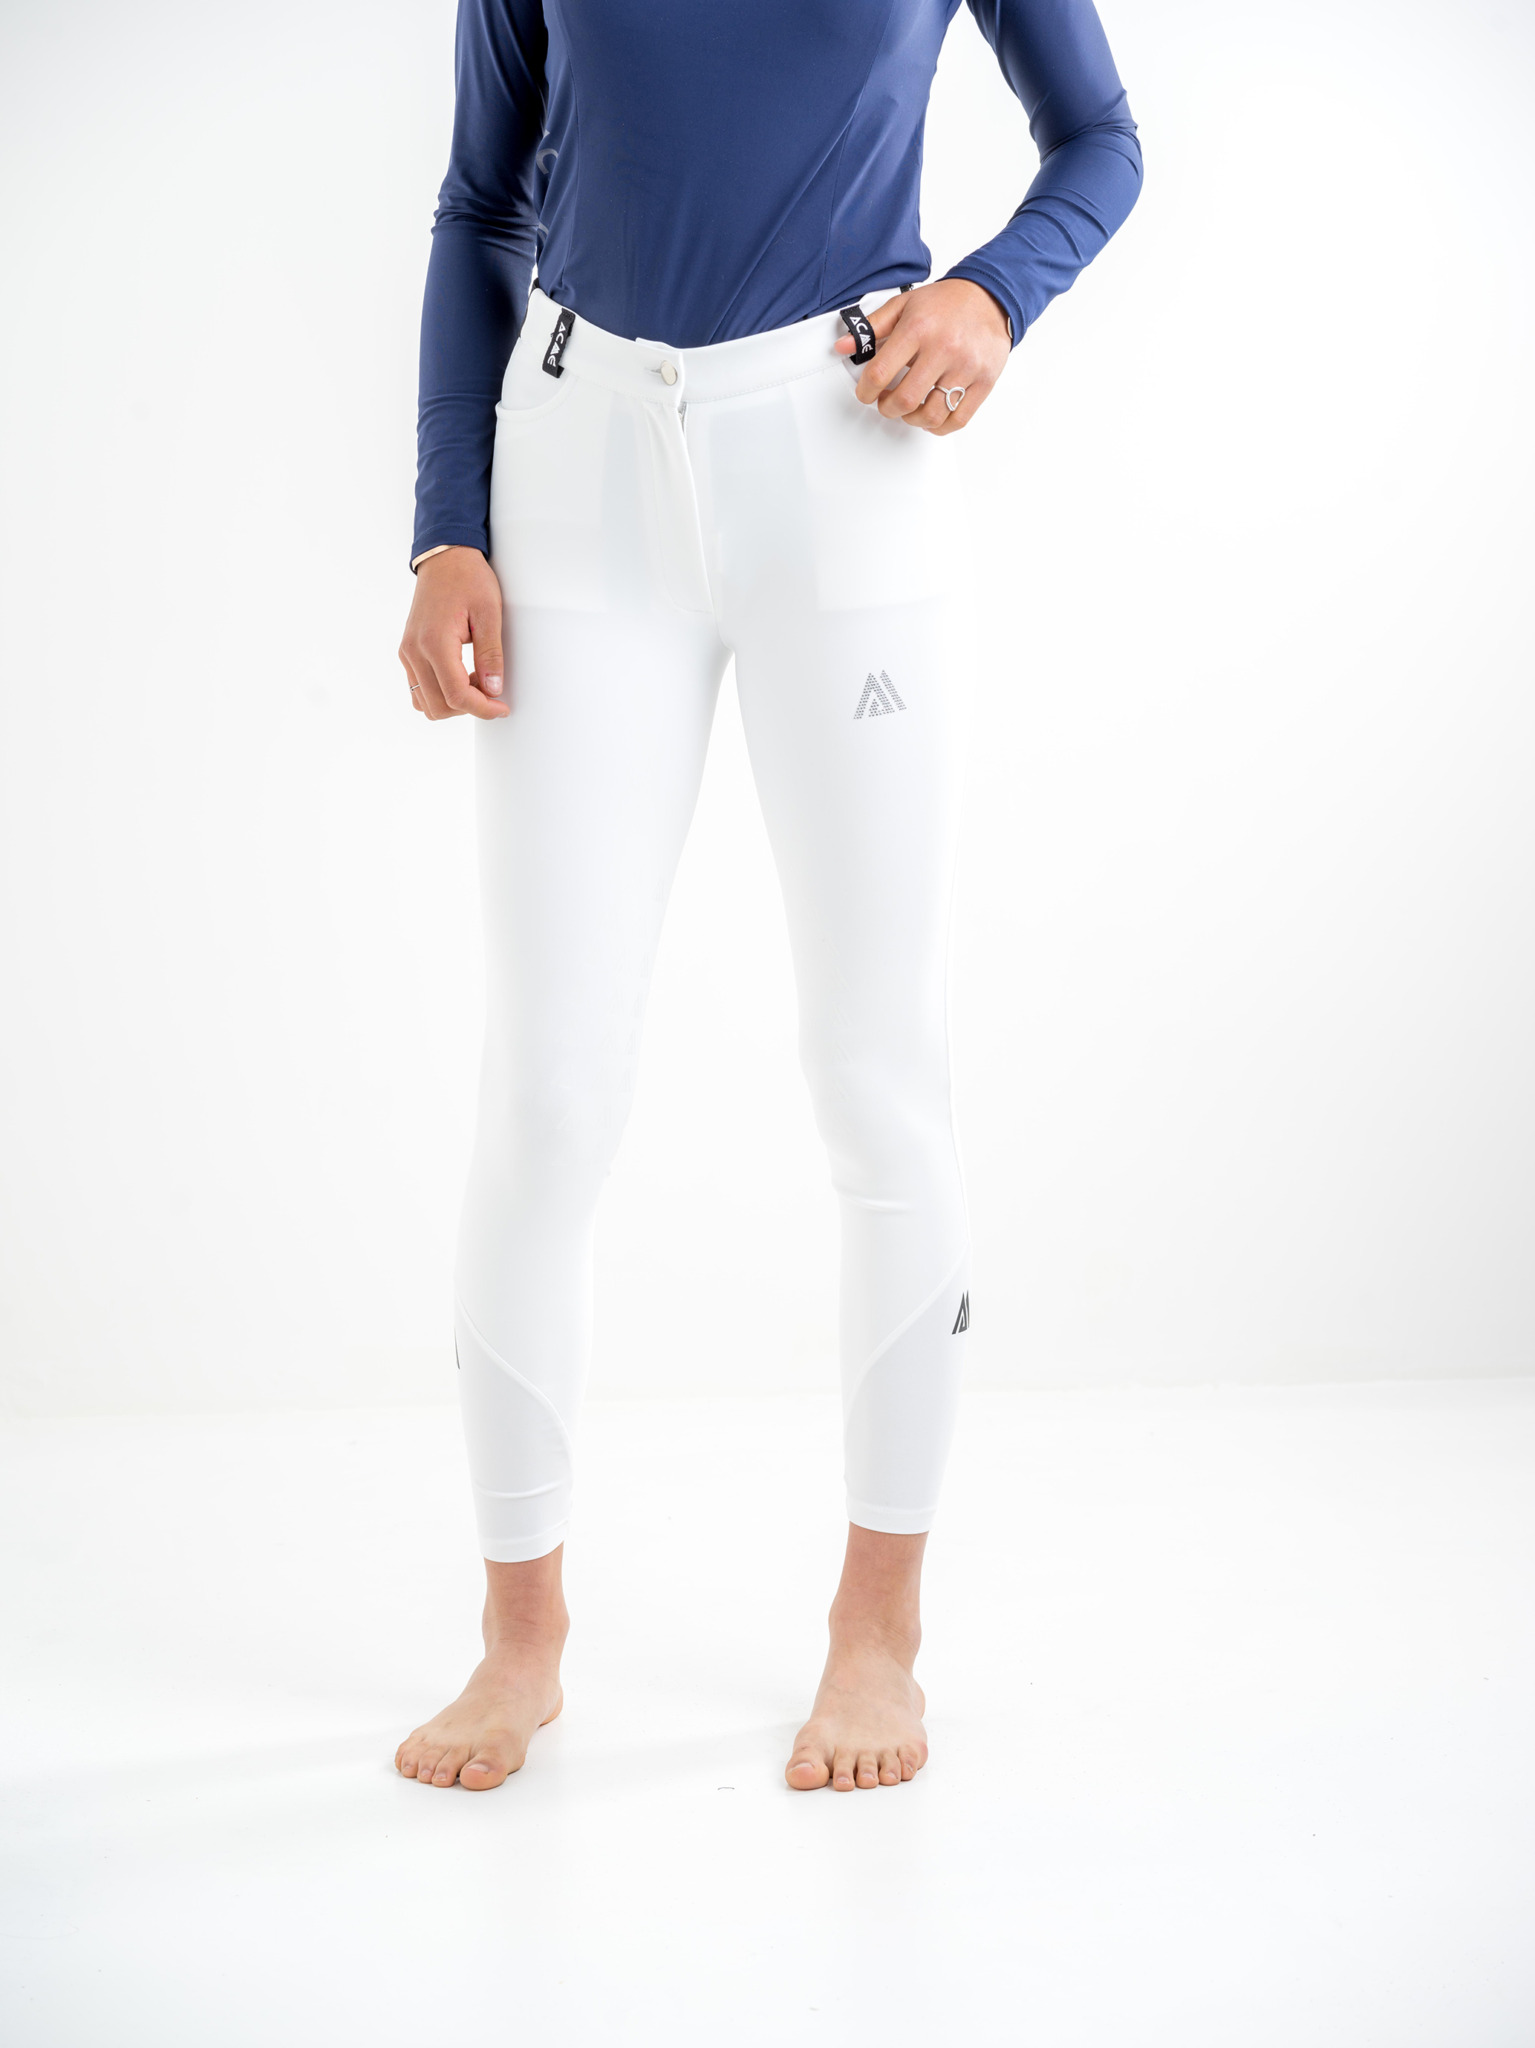 pantalon de concours équitation pour femme marque le sabotier modèle phoenix blanc